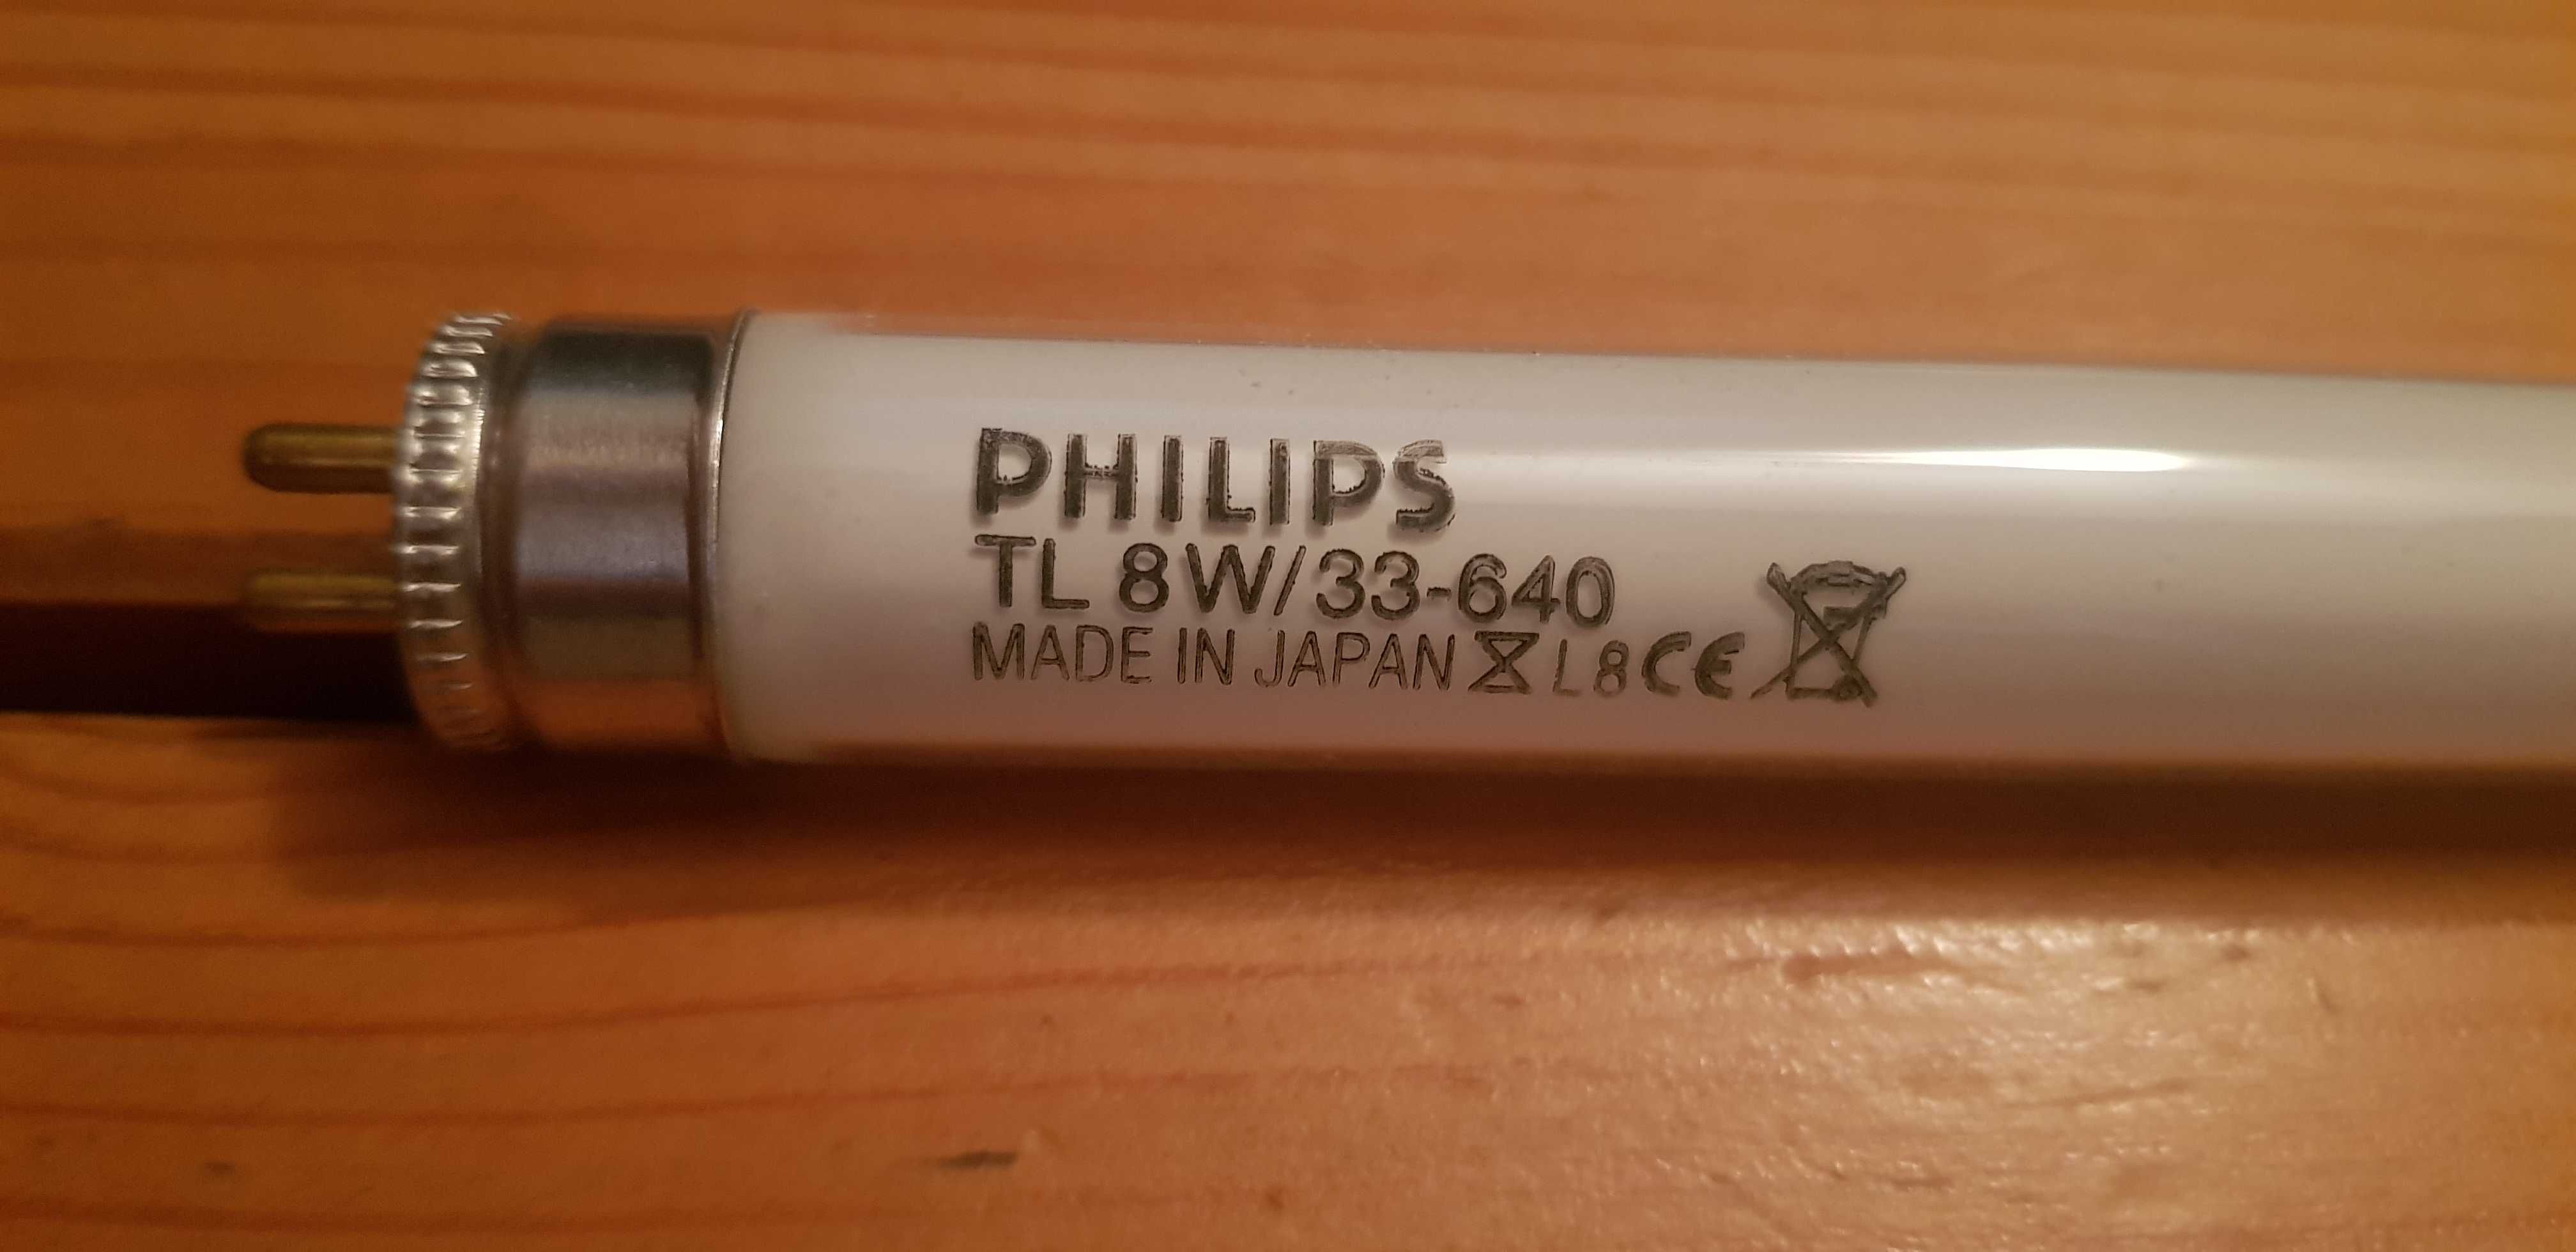 Świetlówka liniowa Philips Tl 8W/33-640 nowa